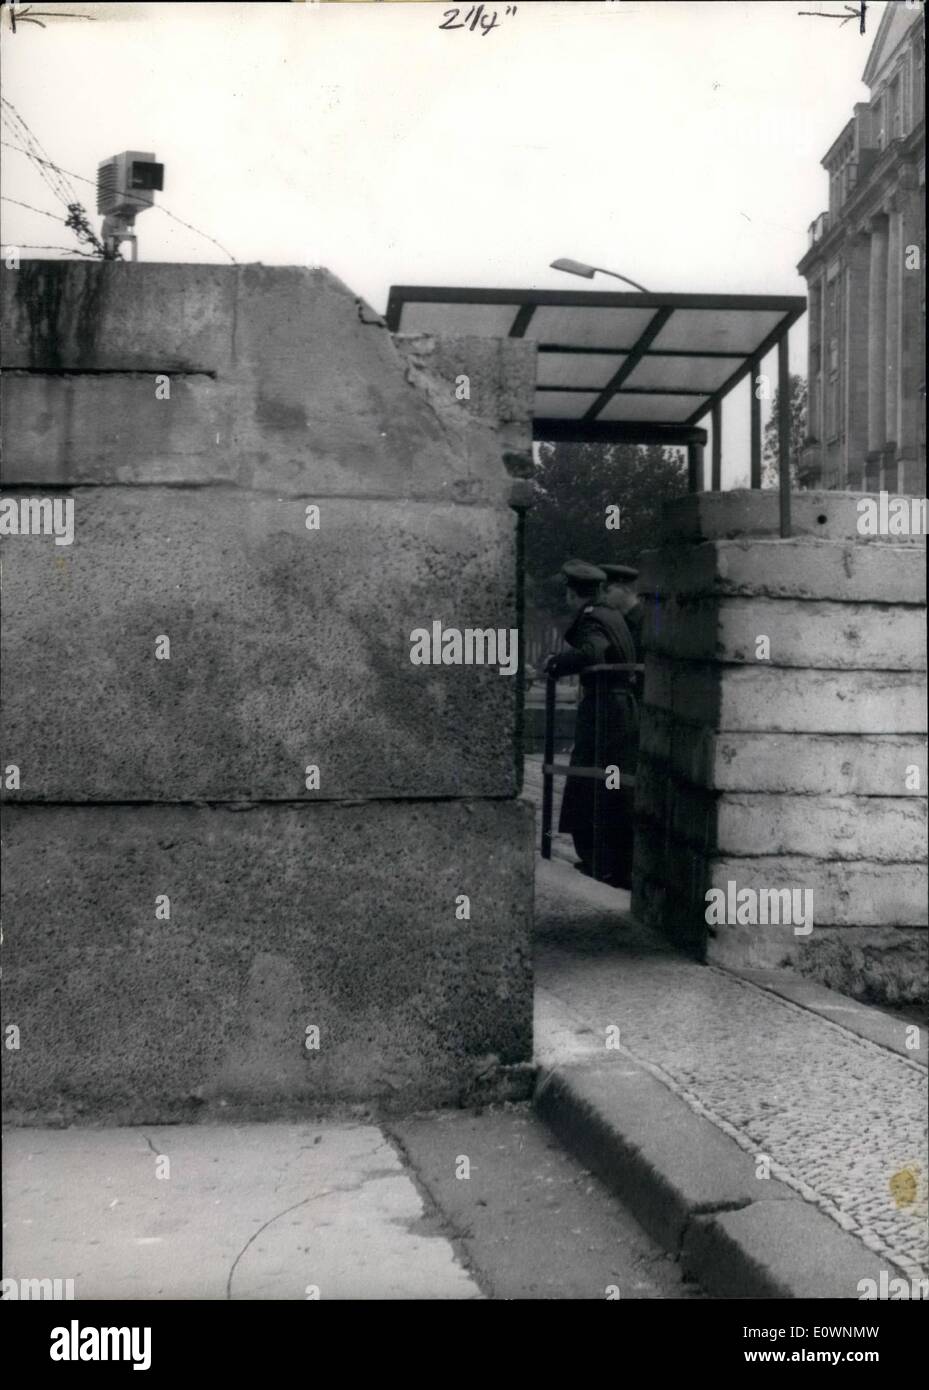 10. Oktober 1963 - Vopos sperren mit TV-Auge nach West-Berlin: Fore um besser zu sehen, was passiert in West-Berlin, die Ost-Zone Polizei stationiert ein TV-Auge an der Oberseite der Wand in der Berliner Chaussee-Straße. Check-Point-Chaussee-Straße auf der linken Seite an der Wand der '' rot-Fernsehen-Auge " Stockfoto